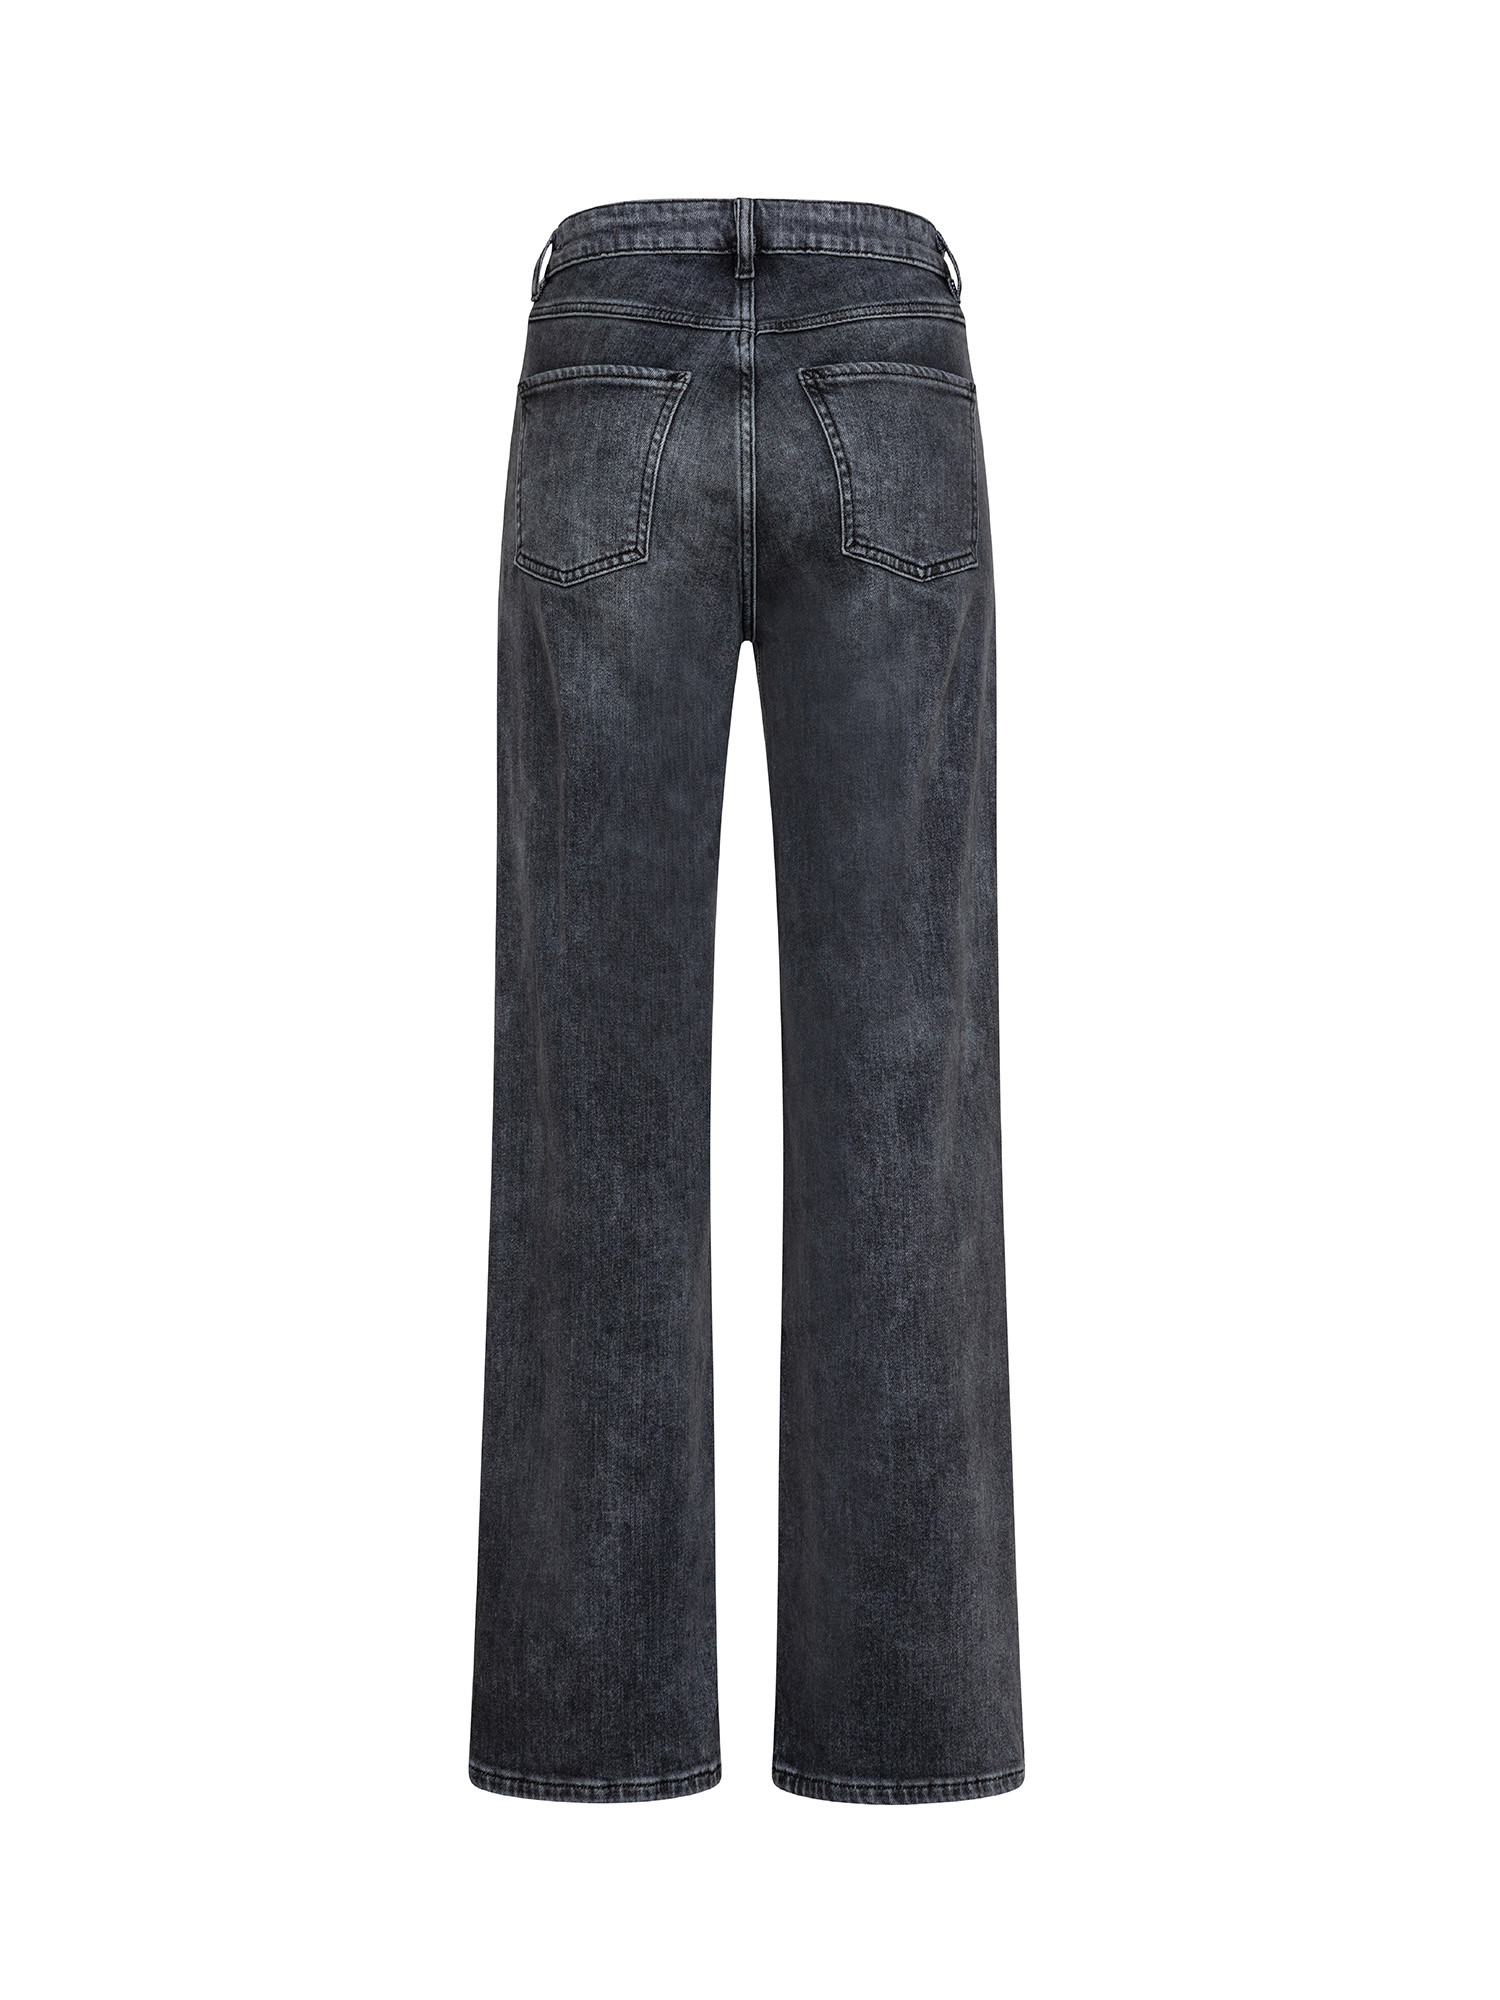 Esprit - Five pocket jeans, Dark Grey, large image number 1